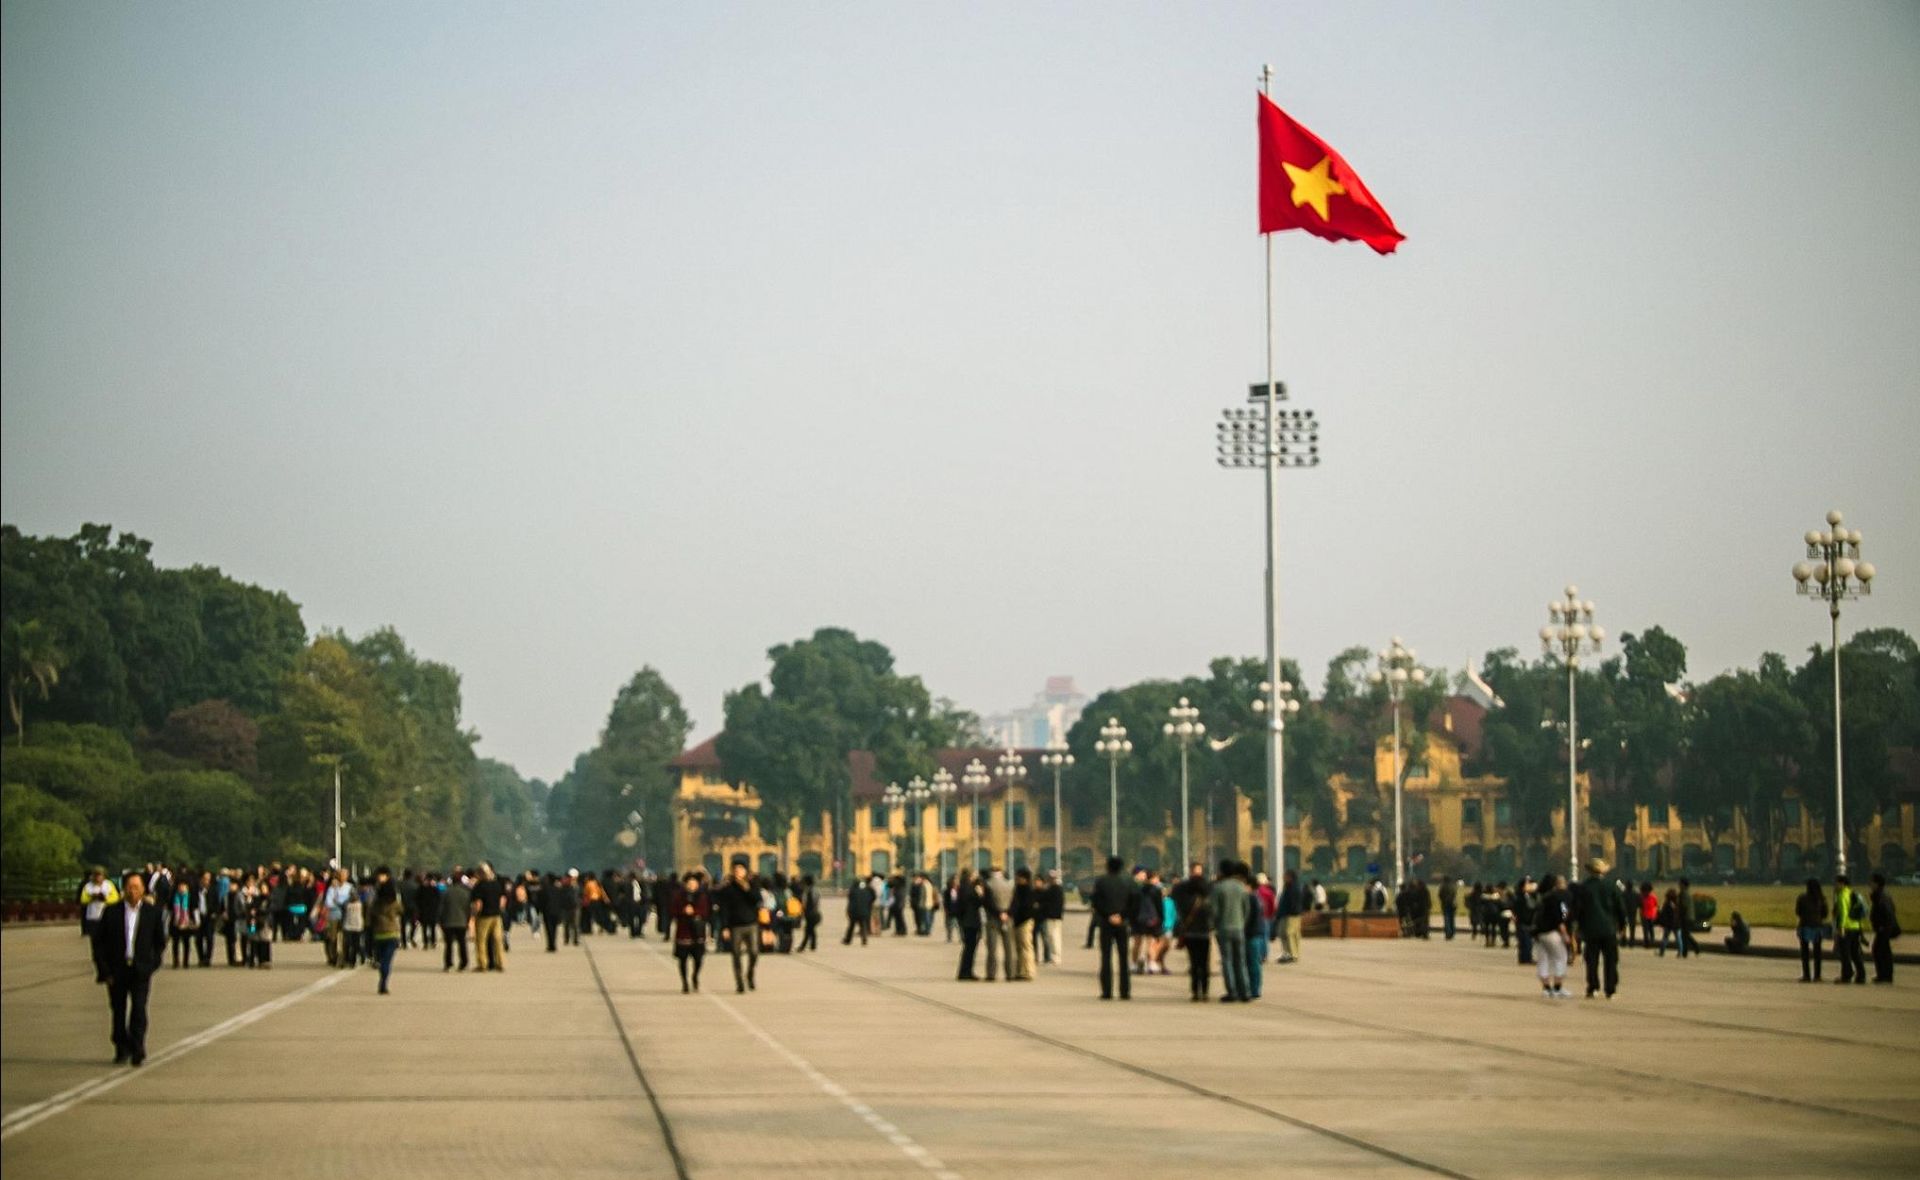 Ba Dình Square, Hanoi